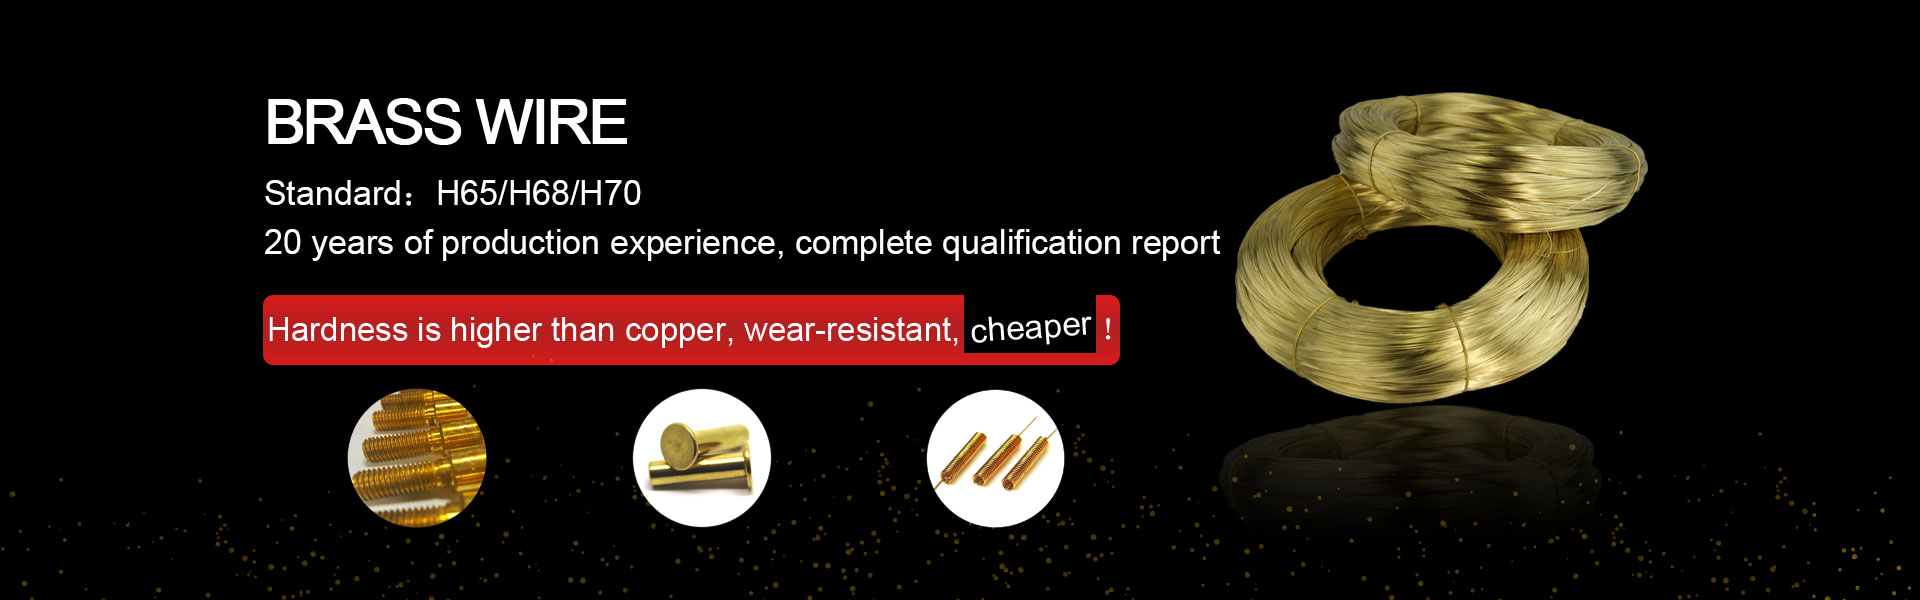 ลวดทองแดง, ก้านทองแดง, แถบทองแดง,Dongguan Nongda Metal Material Co., Ltd.